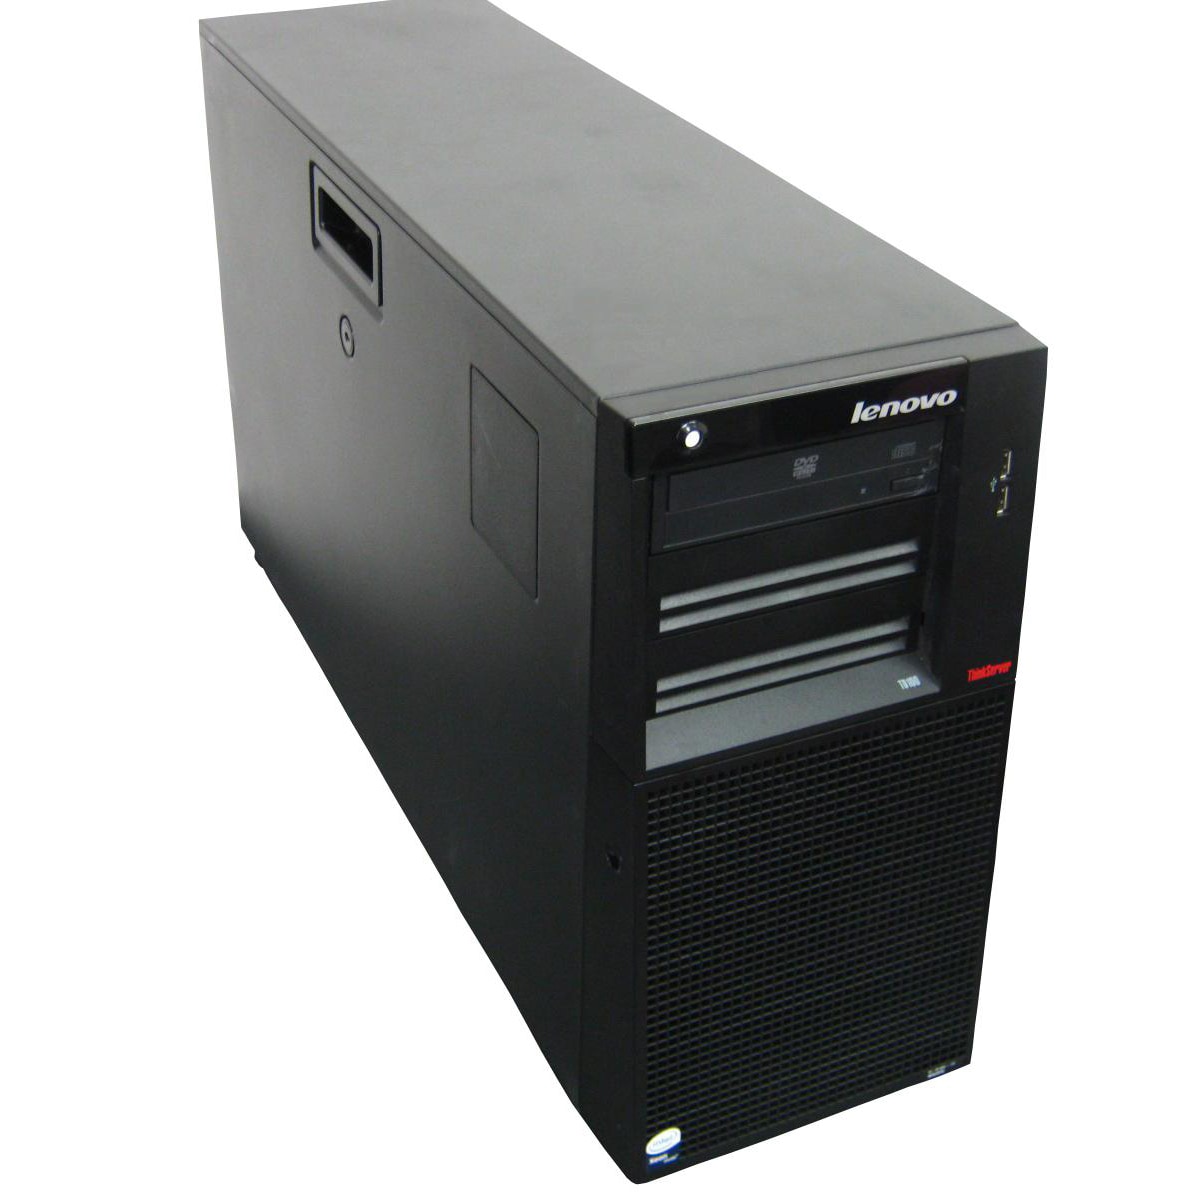 IBM / Lenovo TD100 6429 2.66GHz Tower Server (Refurbished)   